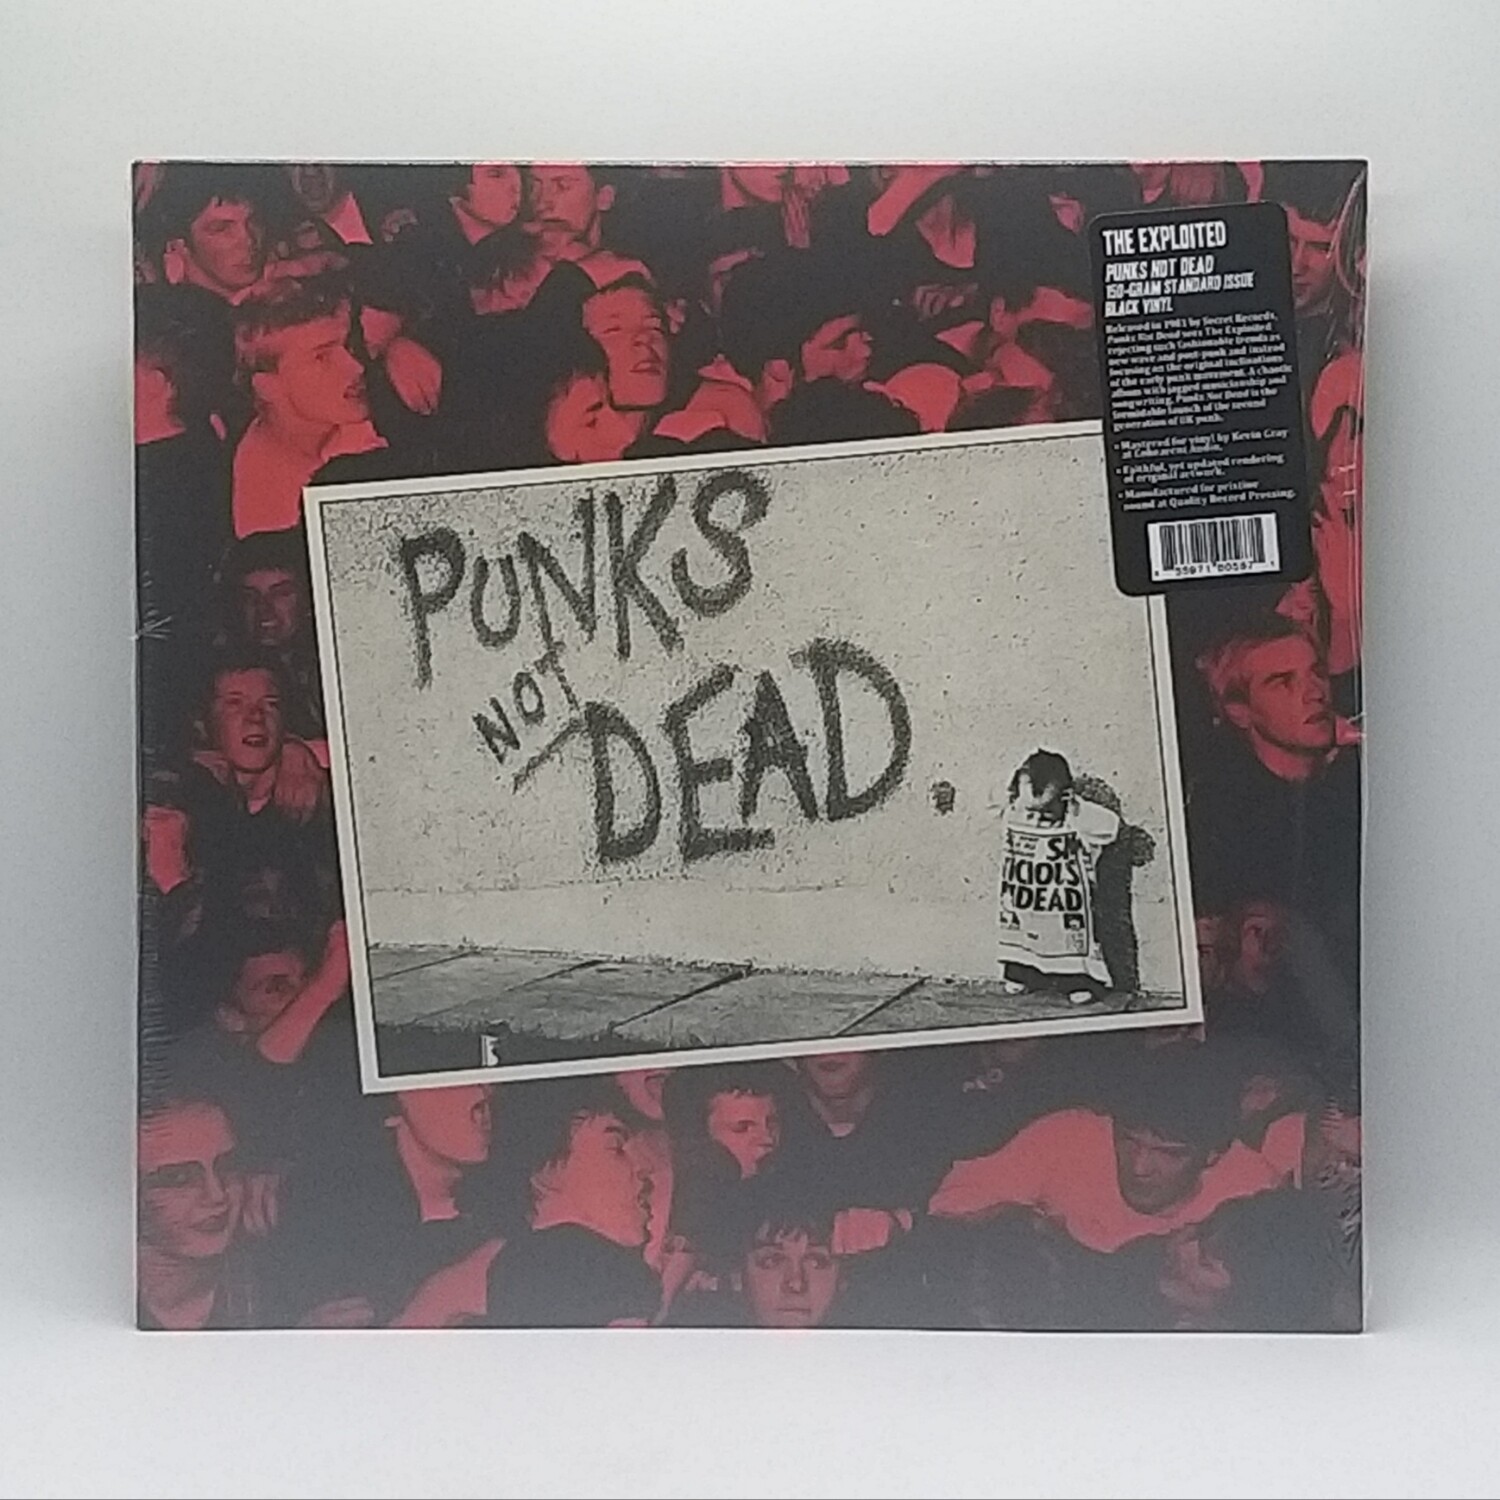 THE EXPLOITED -PUNKS NOT DEAD- LP